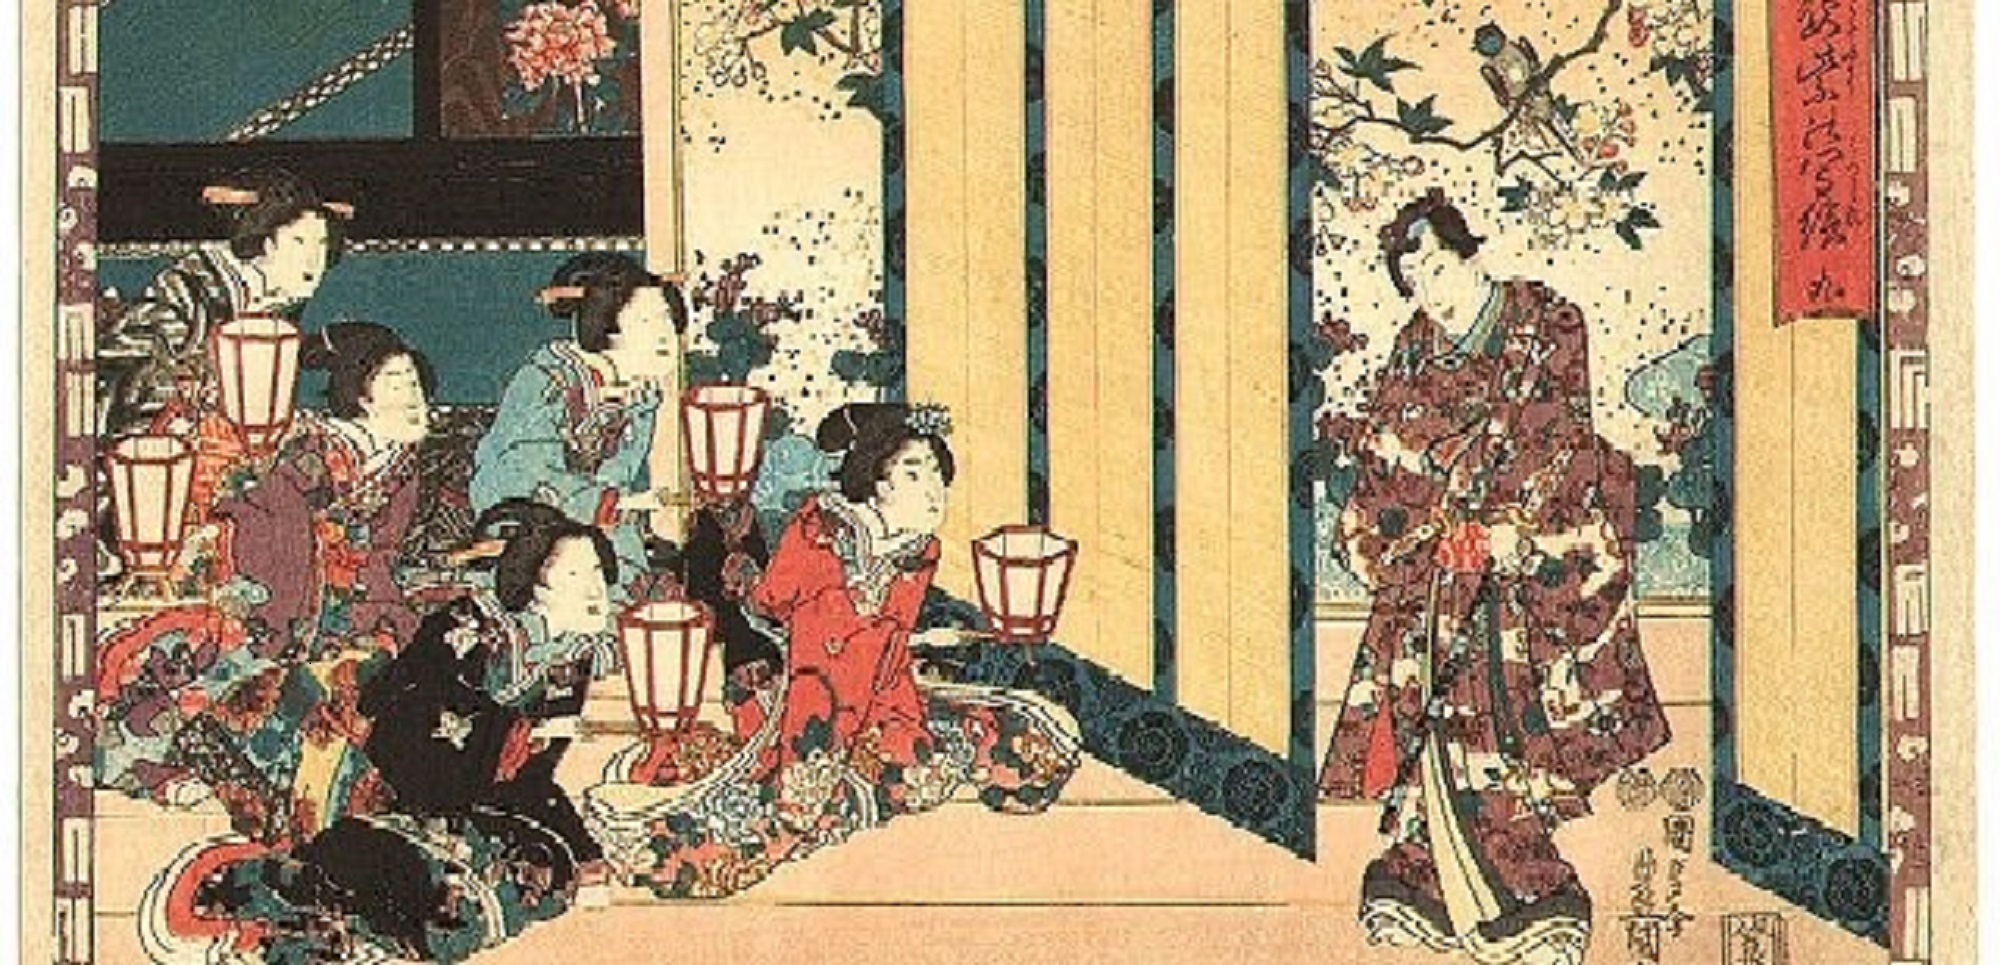 Perioada Heian: Epoca de Aur a Japoniei